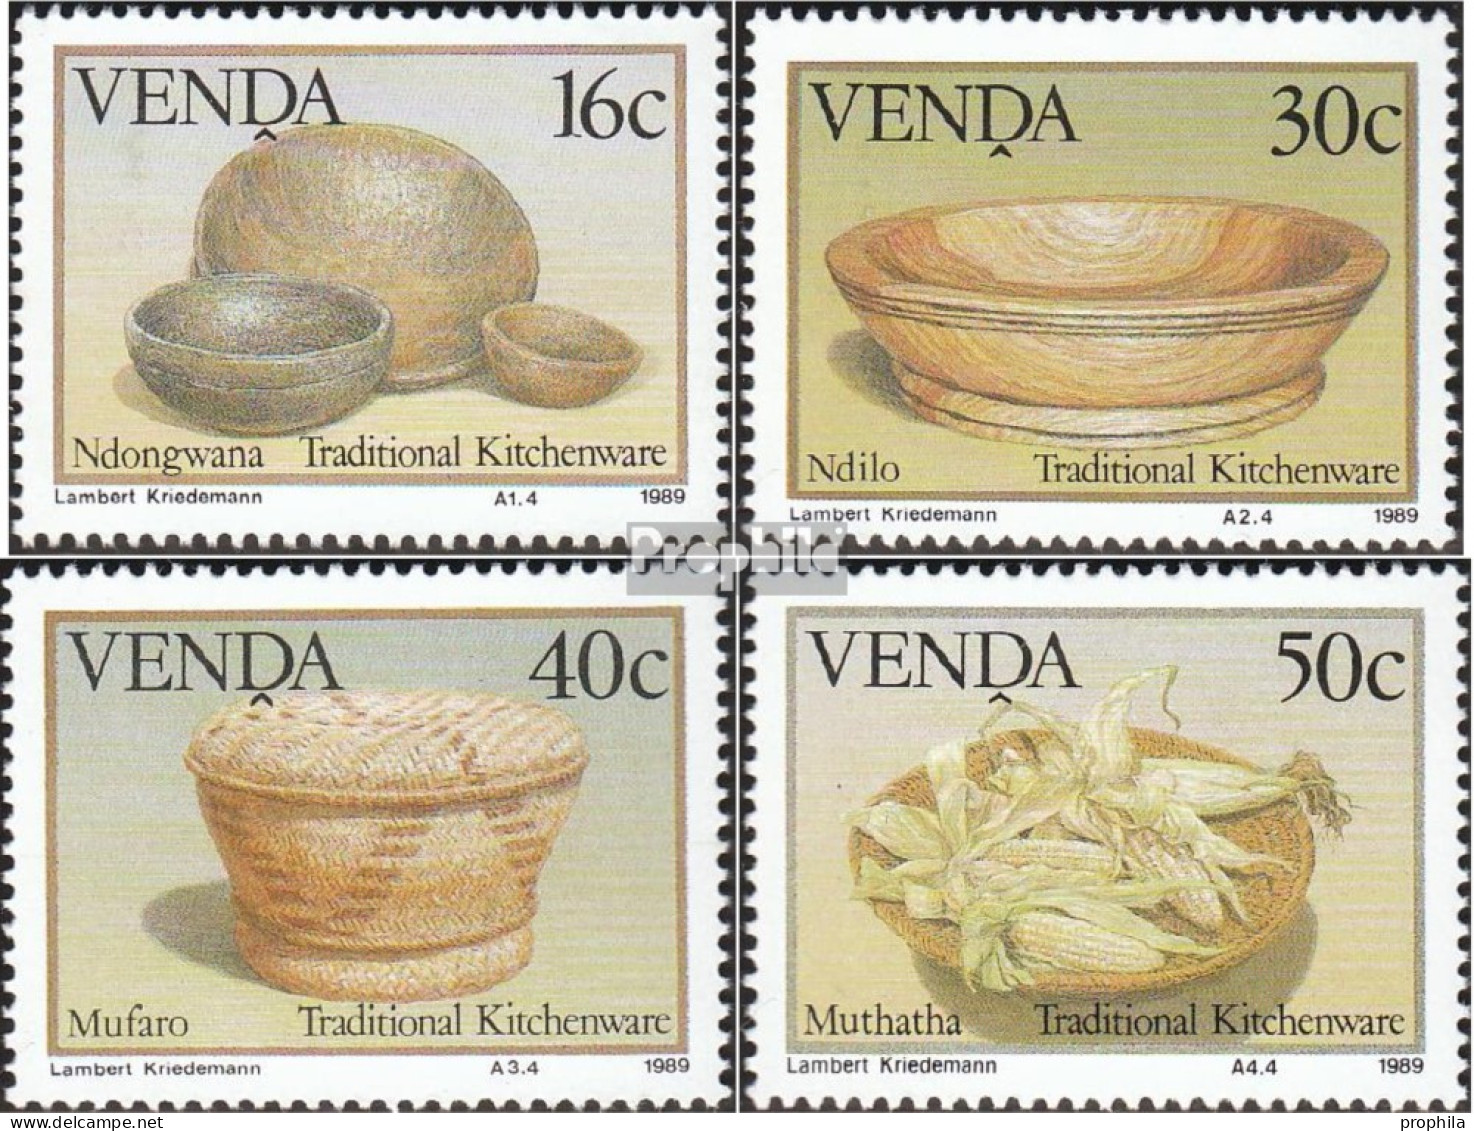 Südafrika - Venda 183-186 (kompl.Ausg.) Postfrisch 1989 Traditonelles Küchengeschirr - Venda